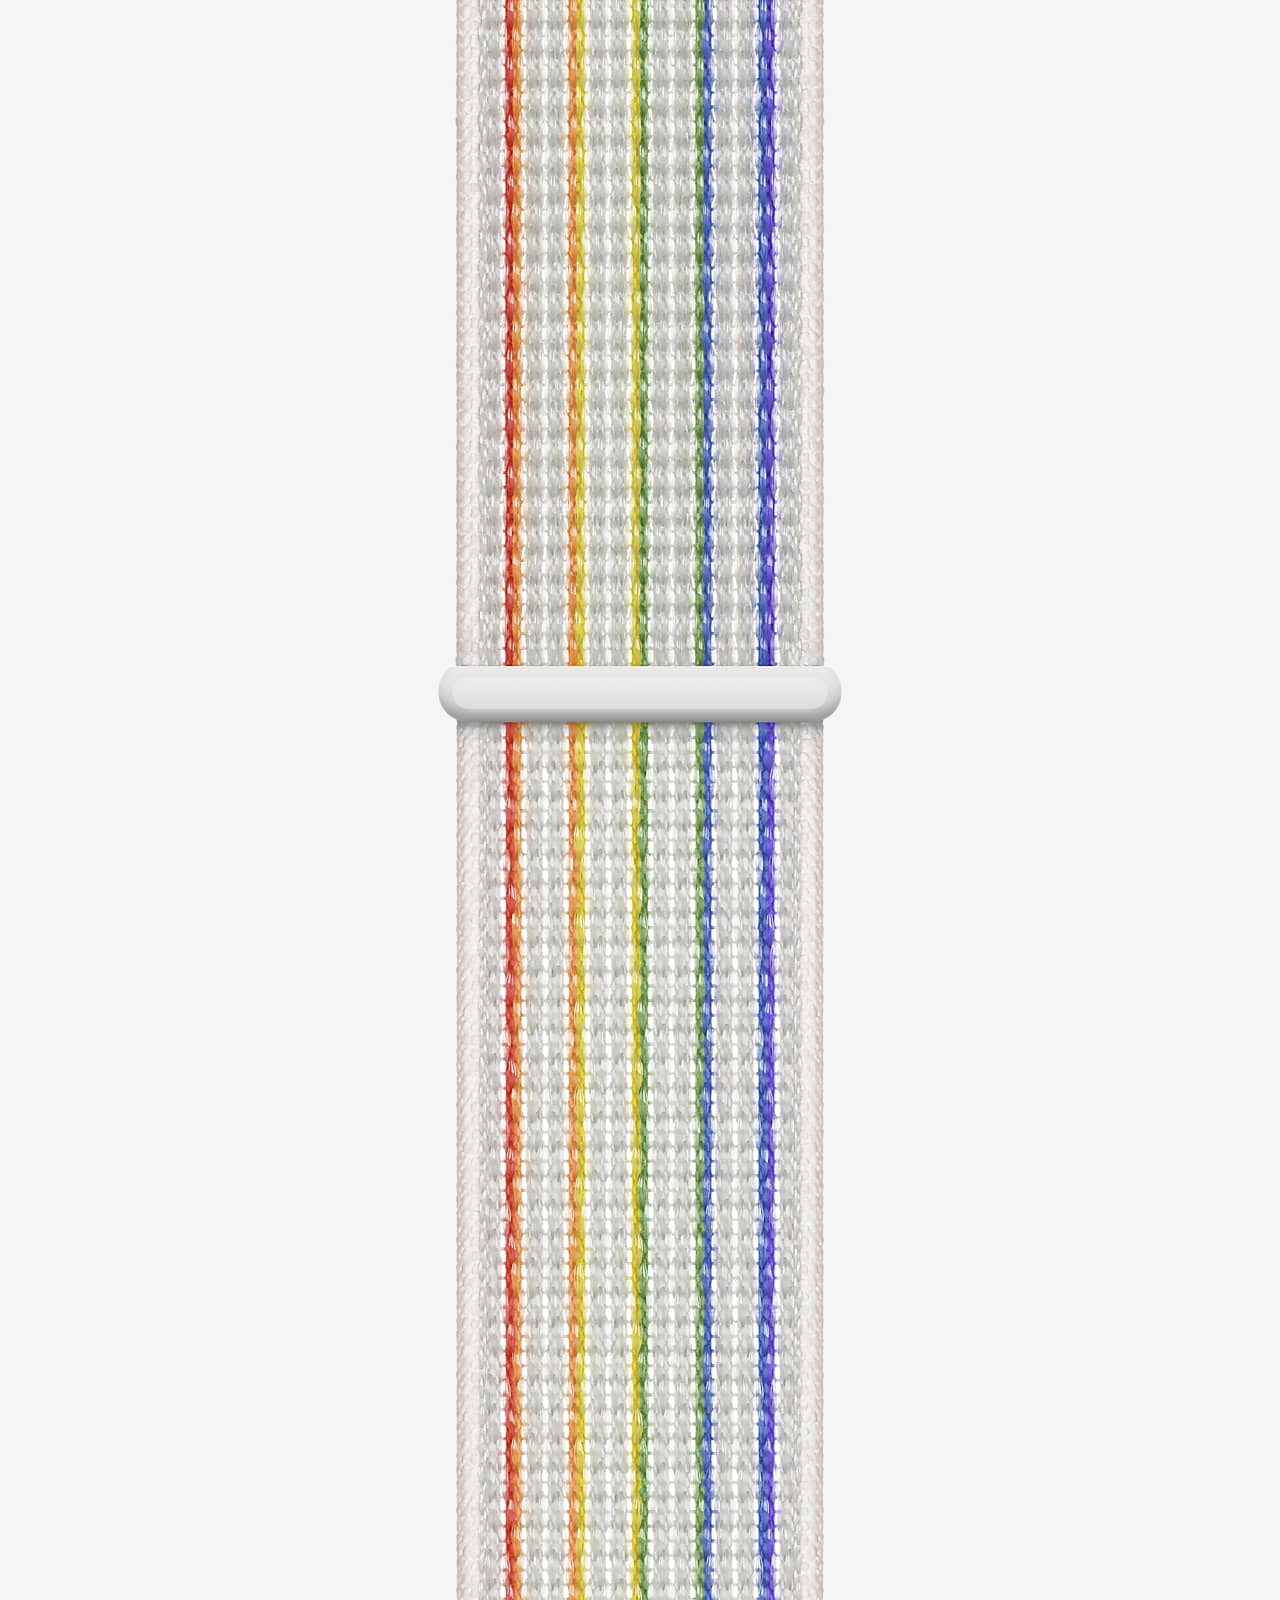 40 毫米白色/多色彩虹版 Nike 回环式运动表带